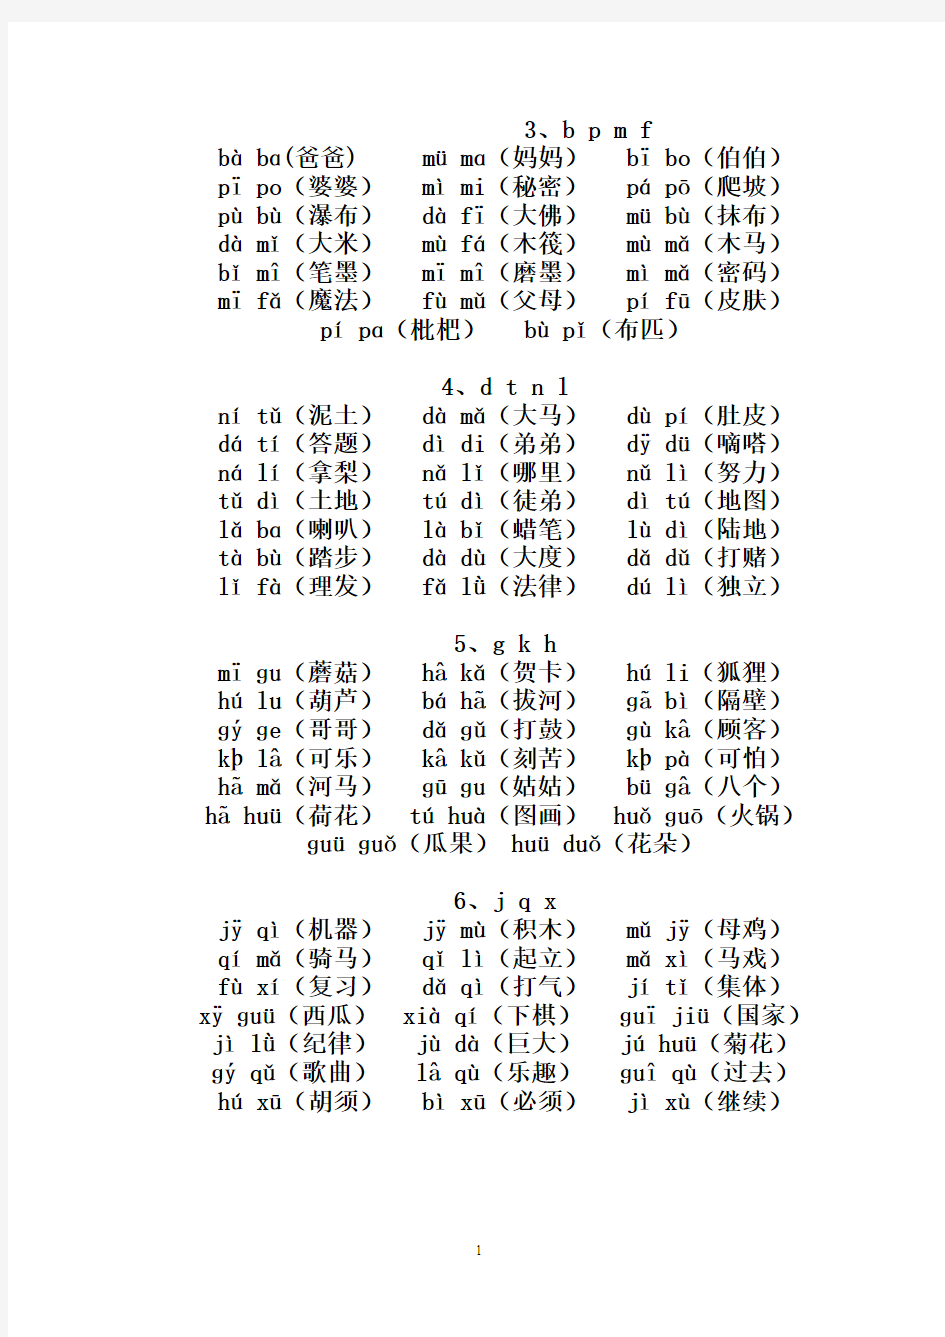 10汉语拼音音节词复习资料 (1)